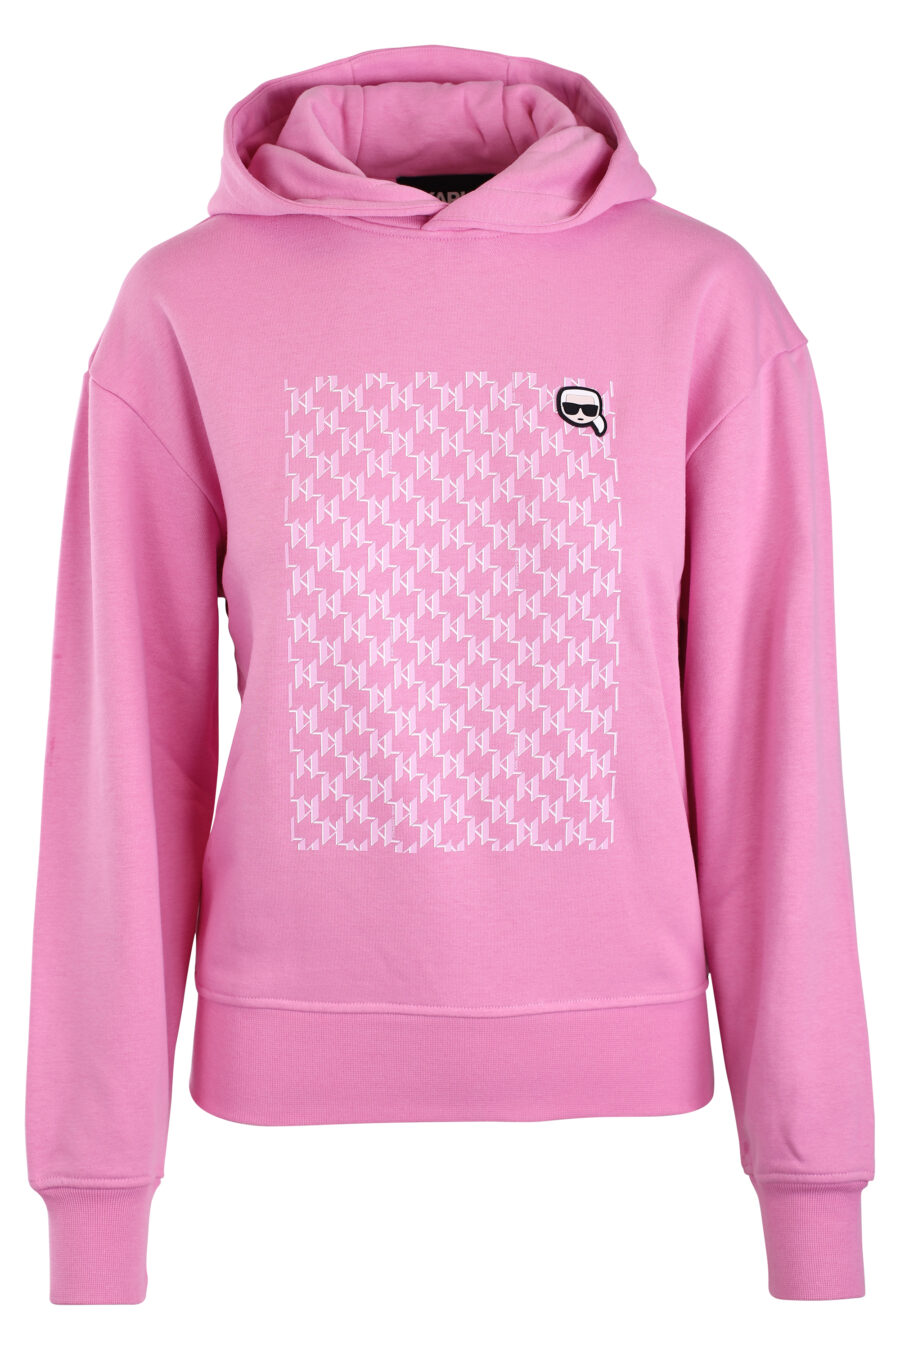 Rosa Sweatshirt mit Kapuze und Monogramm - IMG 3284